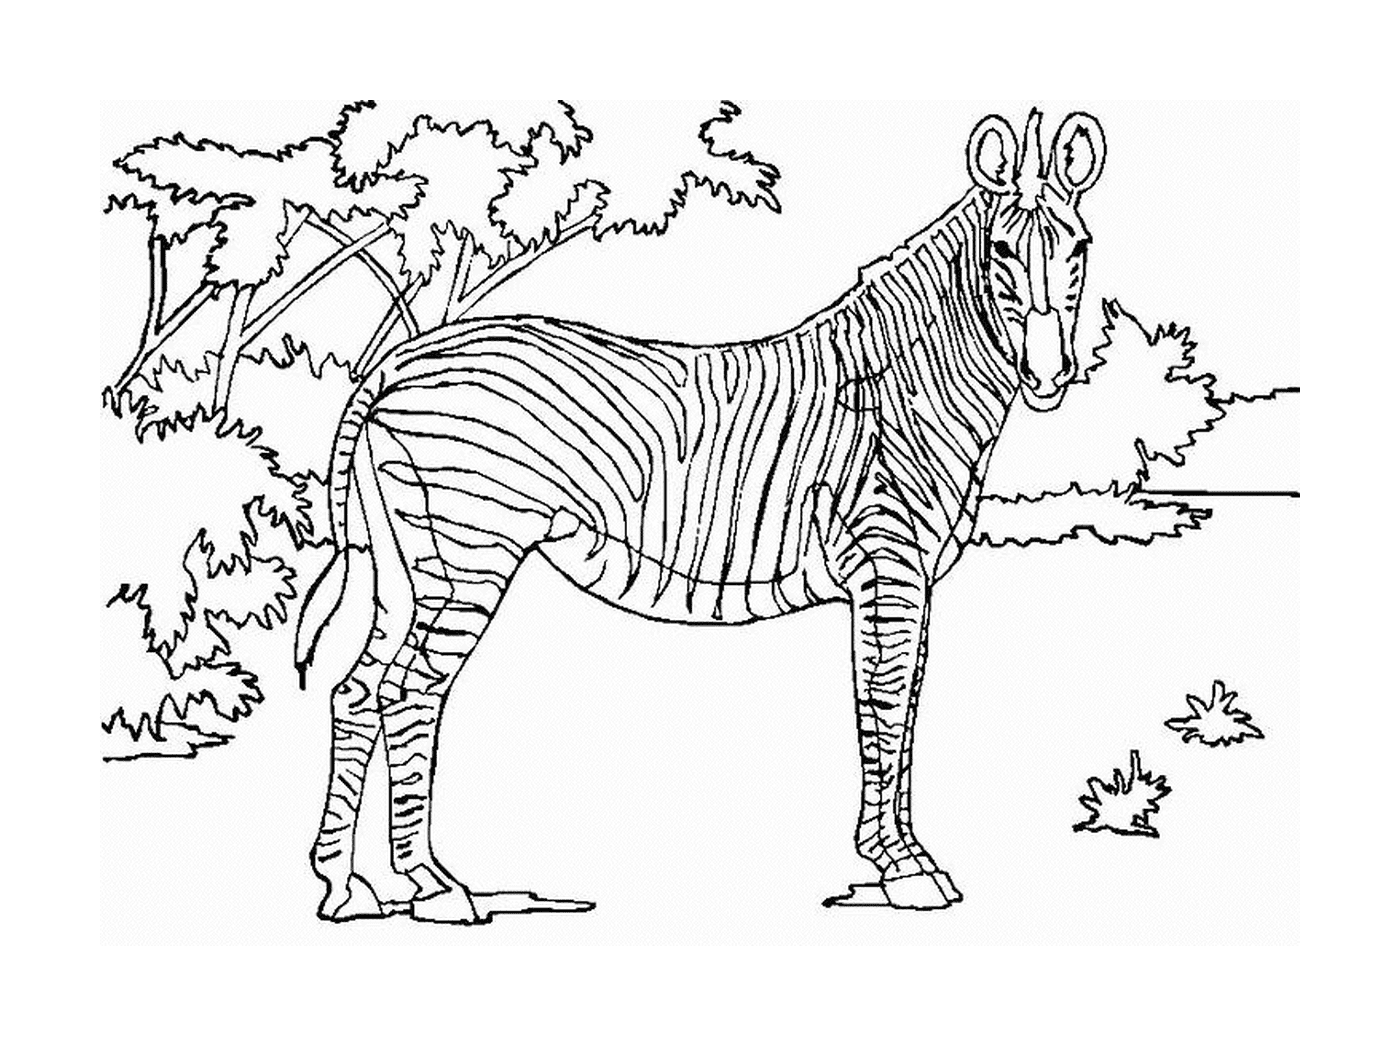  Величественная зебра природы 